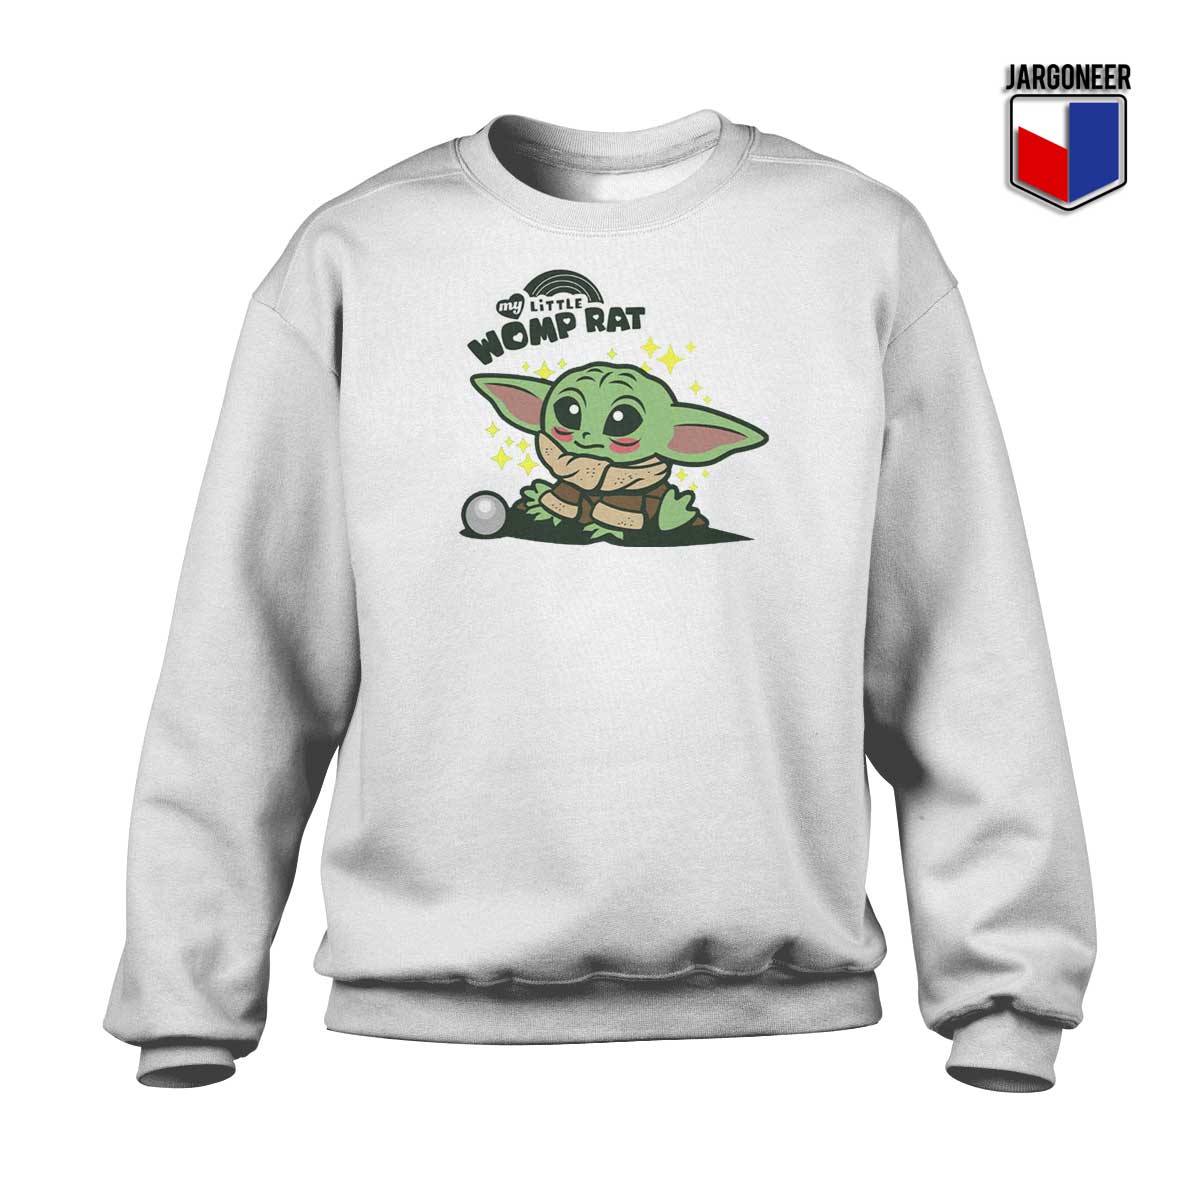 My Little Womp Rat Yoda Sweatshirt - Shop Unique Graphic Cool Shirt Designs